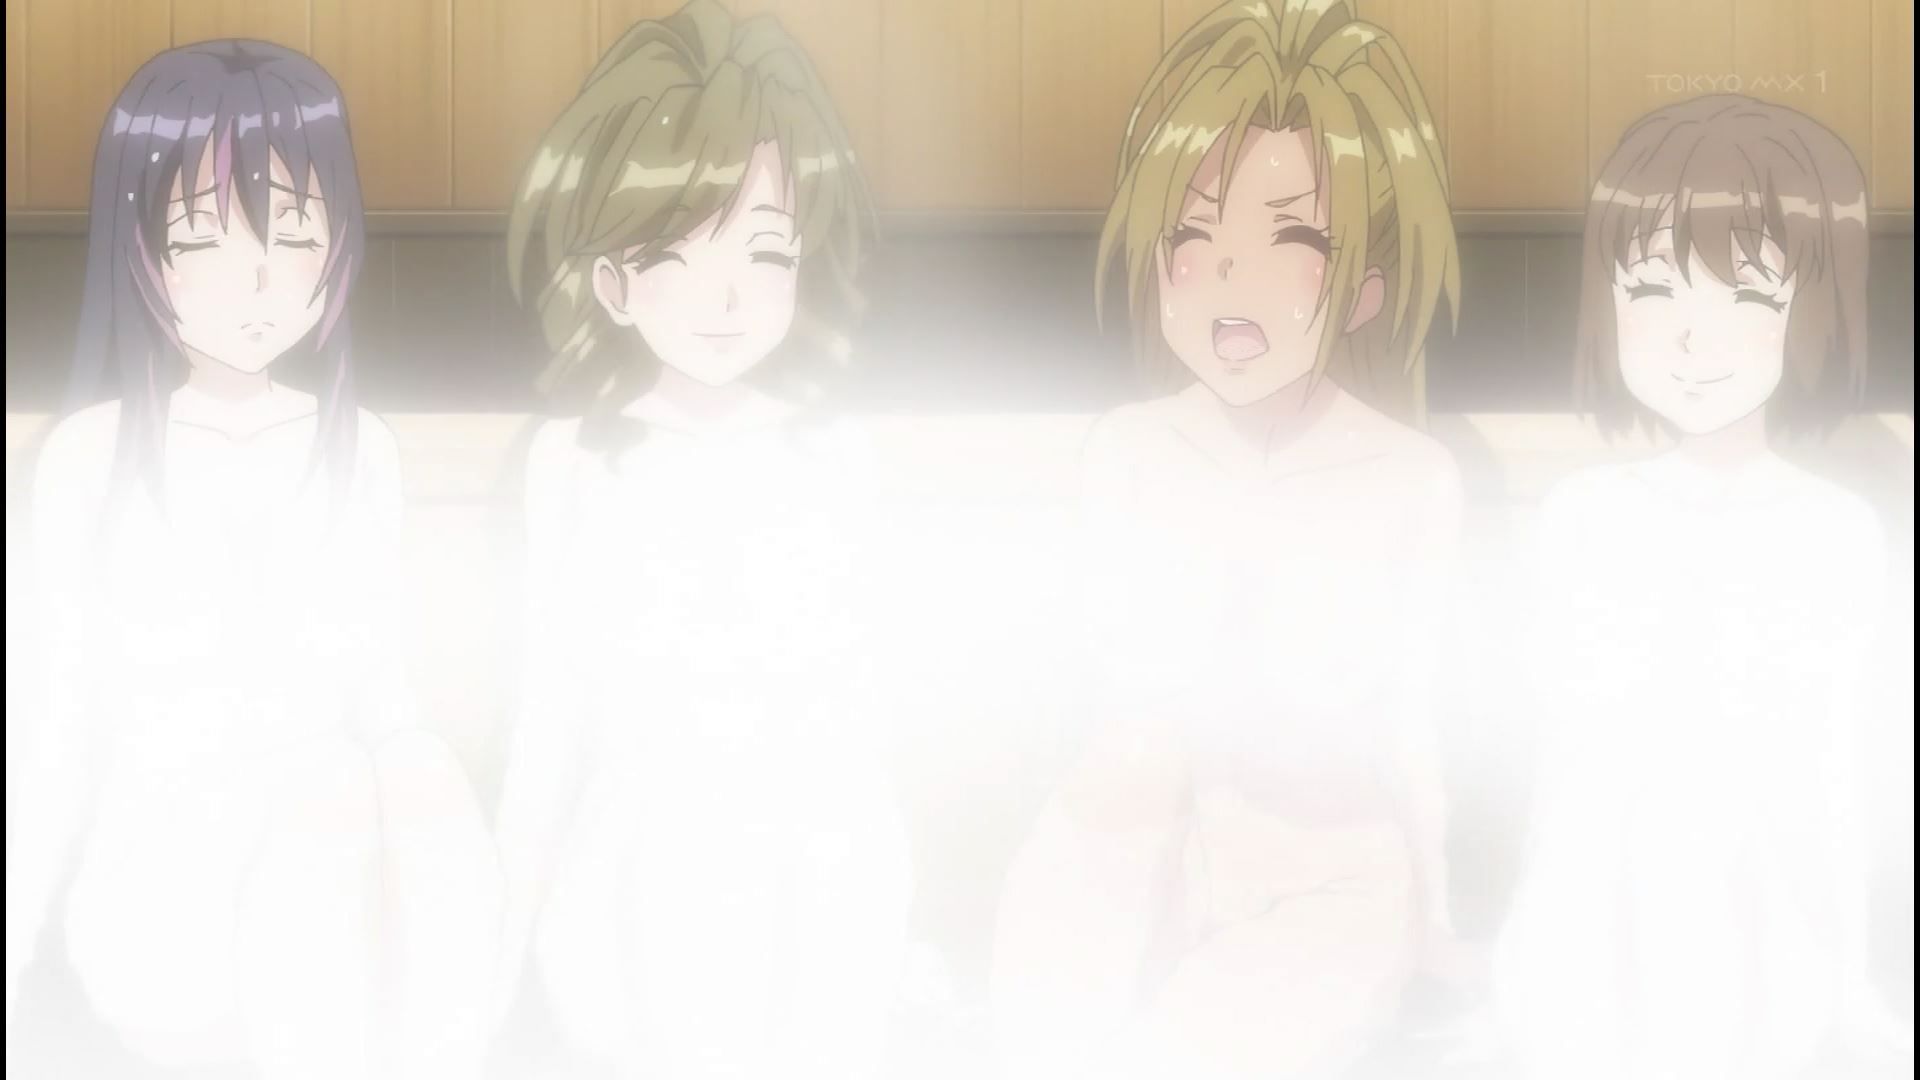 Anime [Kandagawa JETGIRLS] 8 episodes of girls erotic round-view bath bathing scene! 14